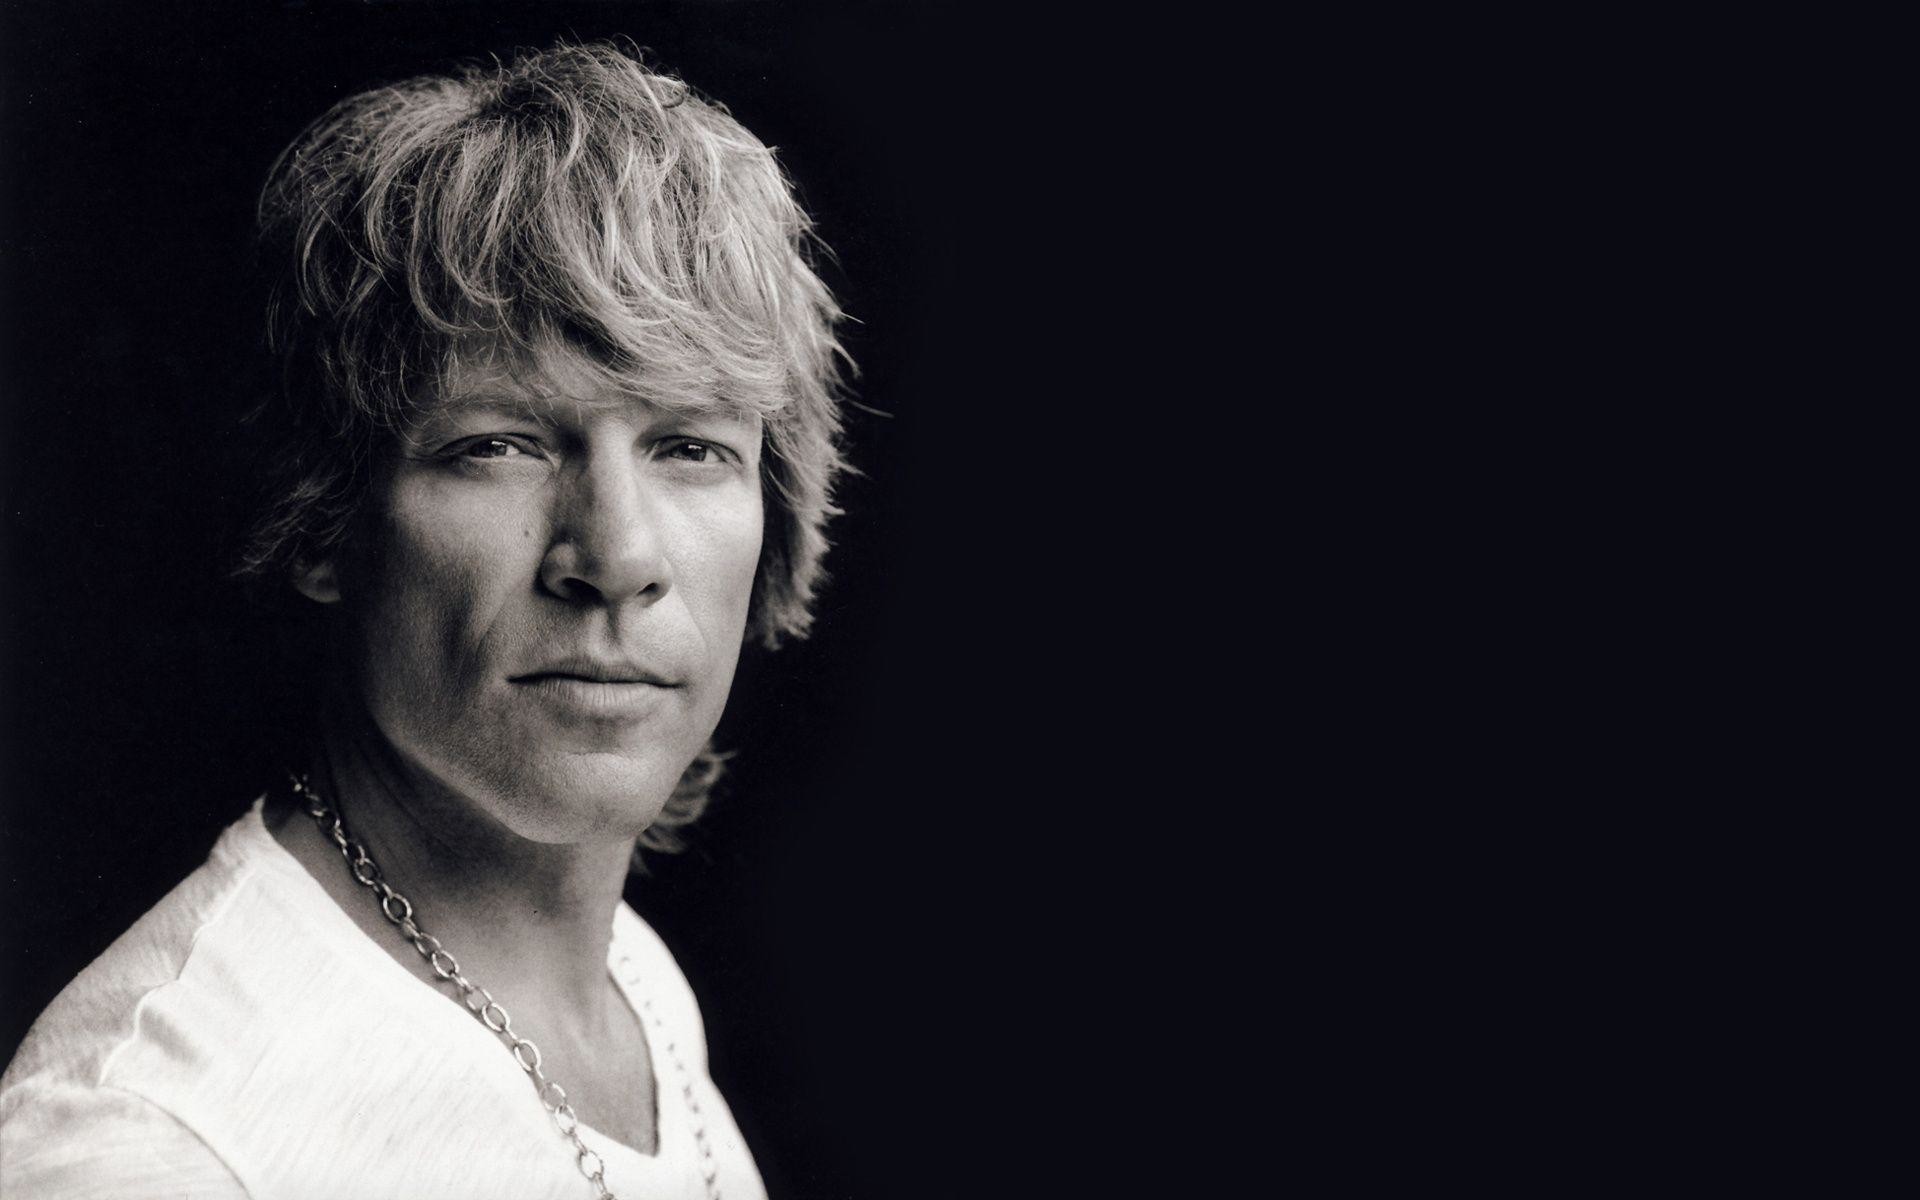 1920x1200 @wallpaper.wiki. American singer John Bon Jovi ...